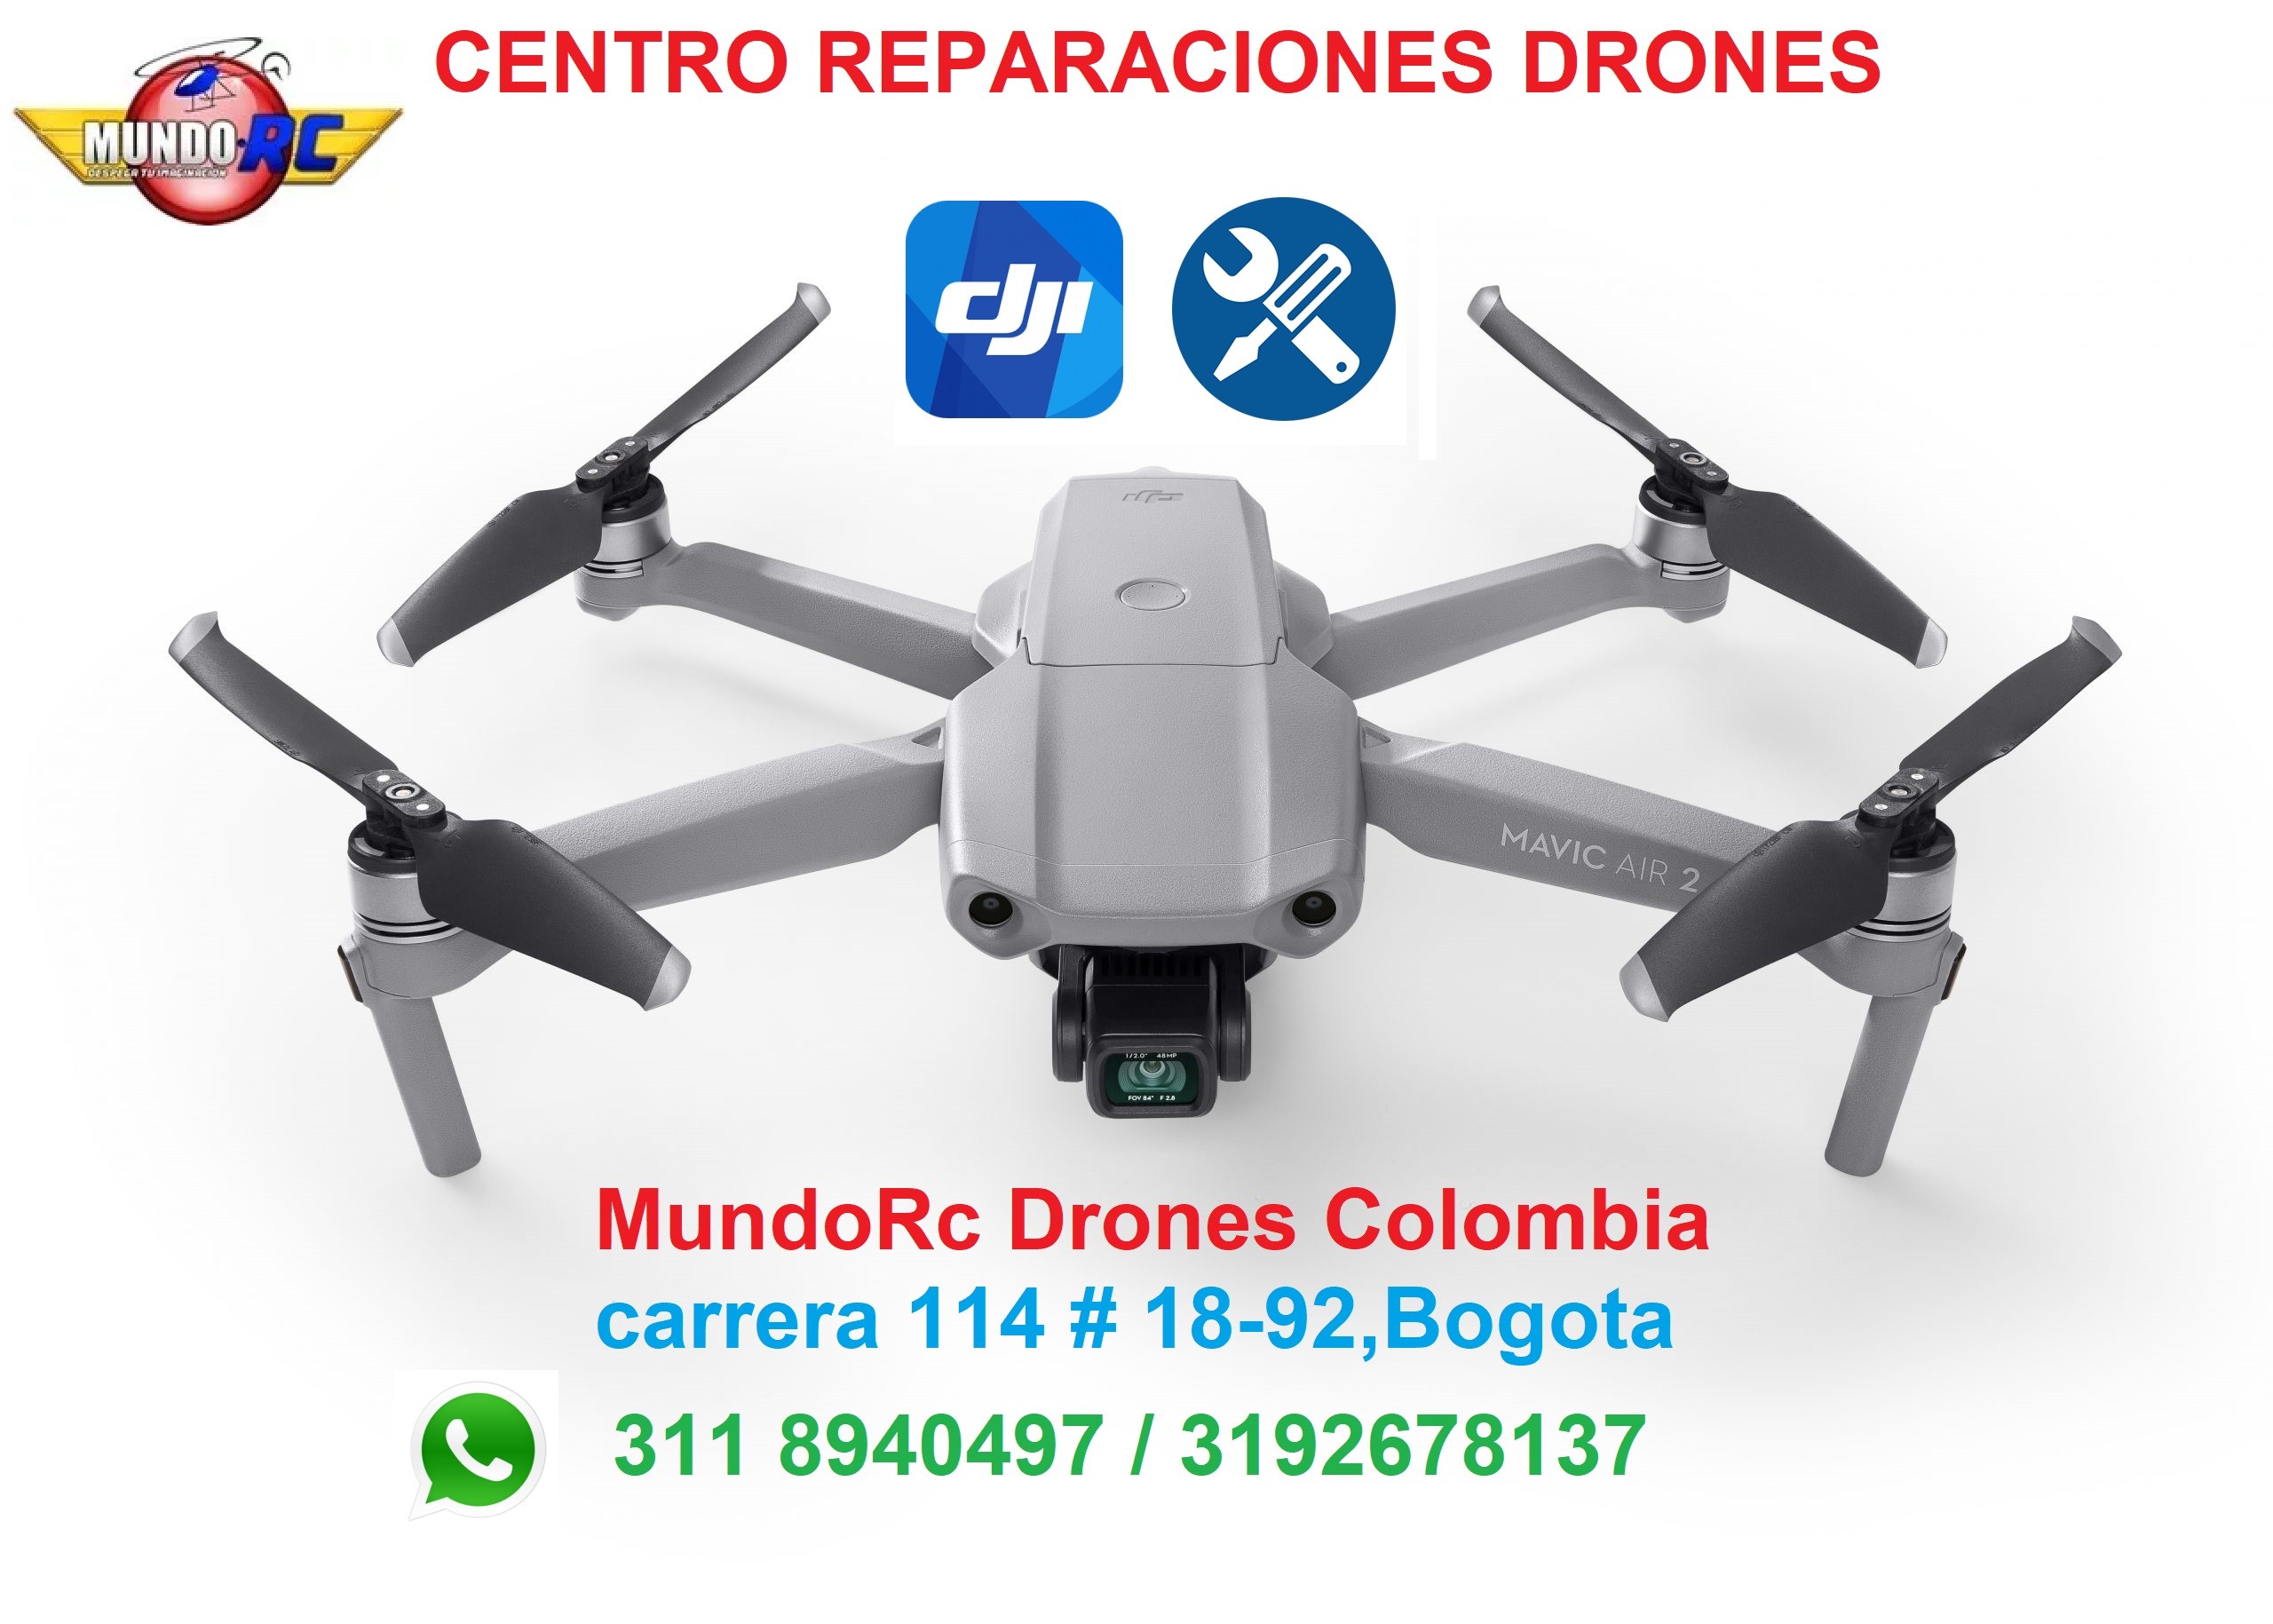 Servicio tecnico DJI Colombia reparacion drones DJI